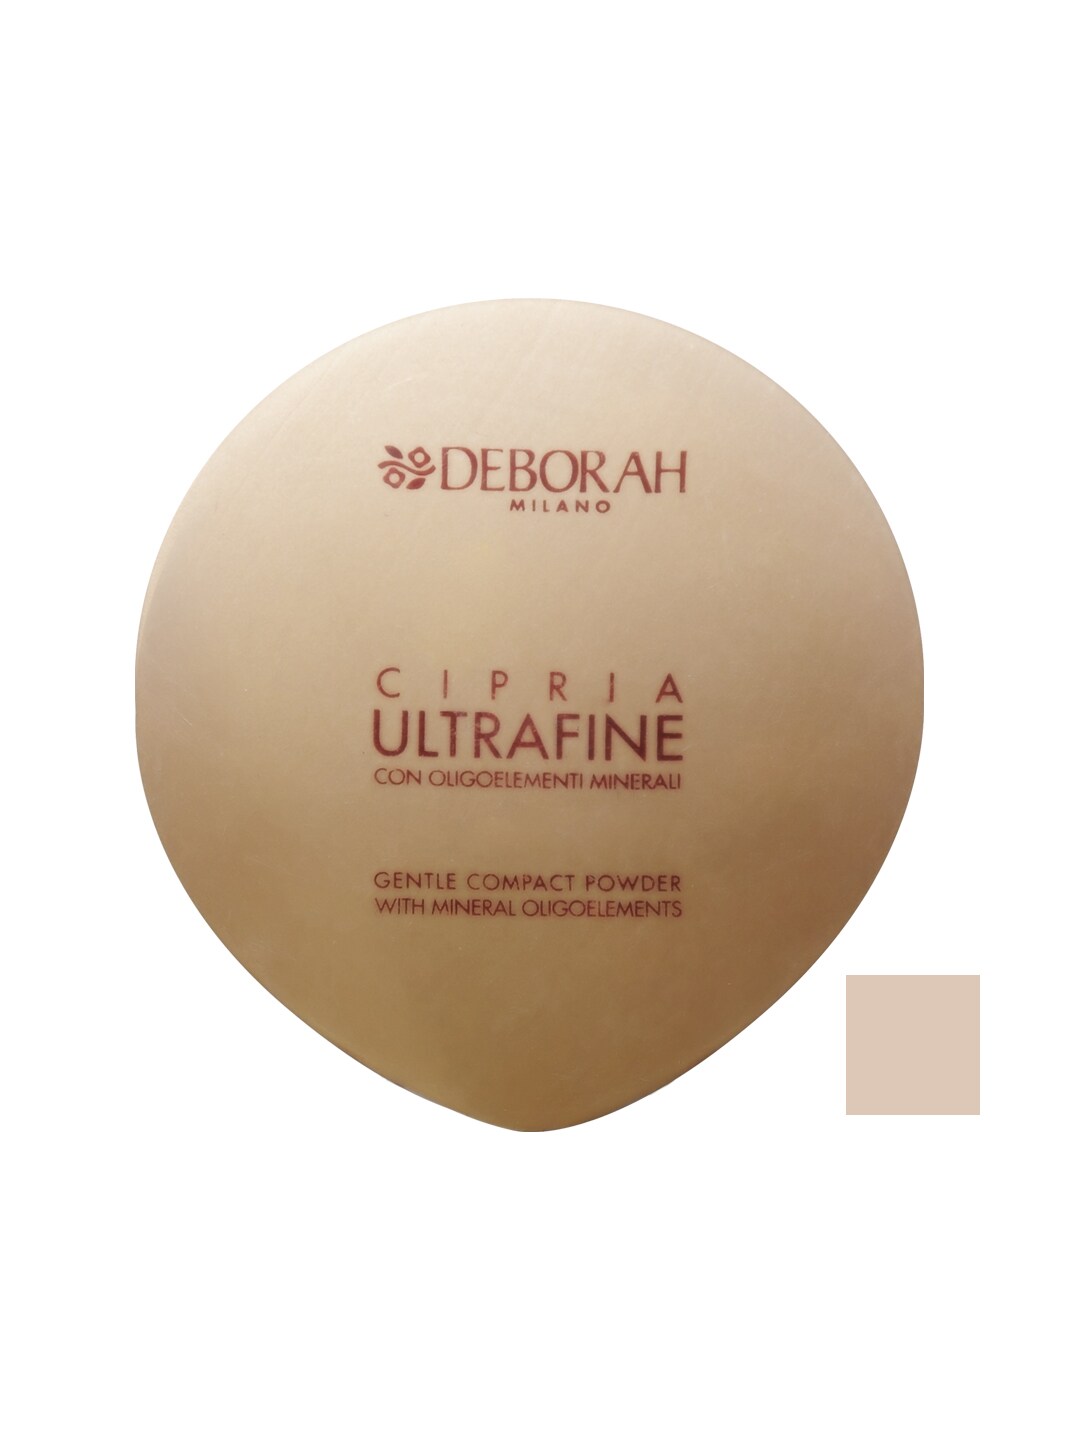 Deborah Ultrafine Compact Powder 07